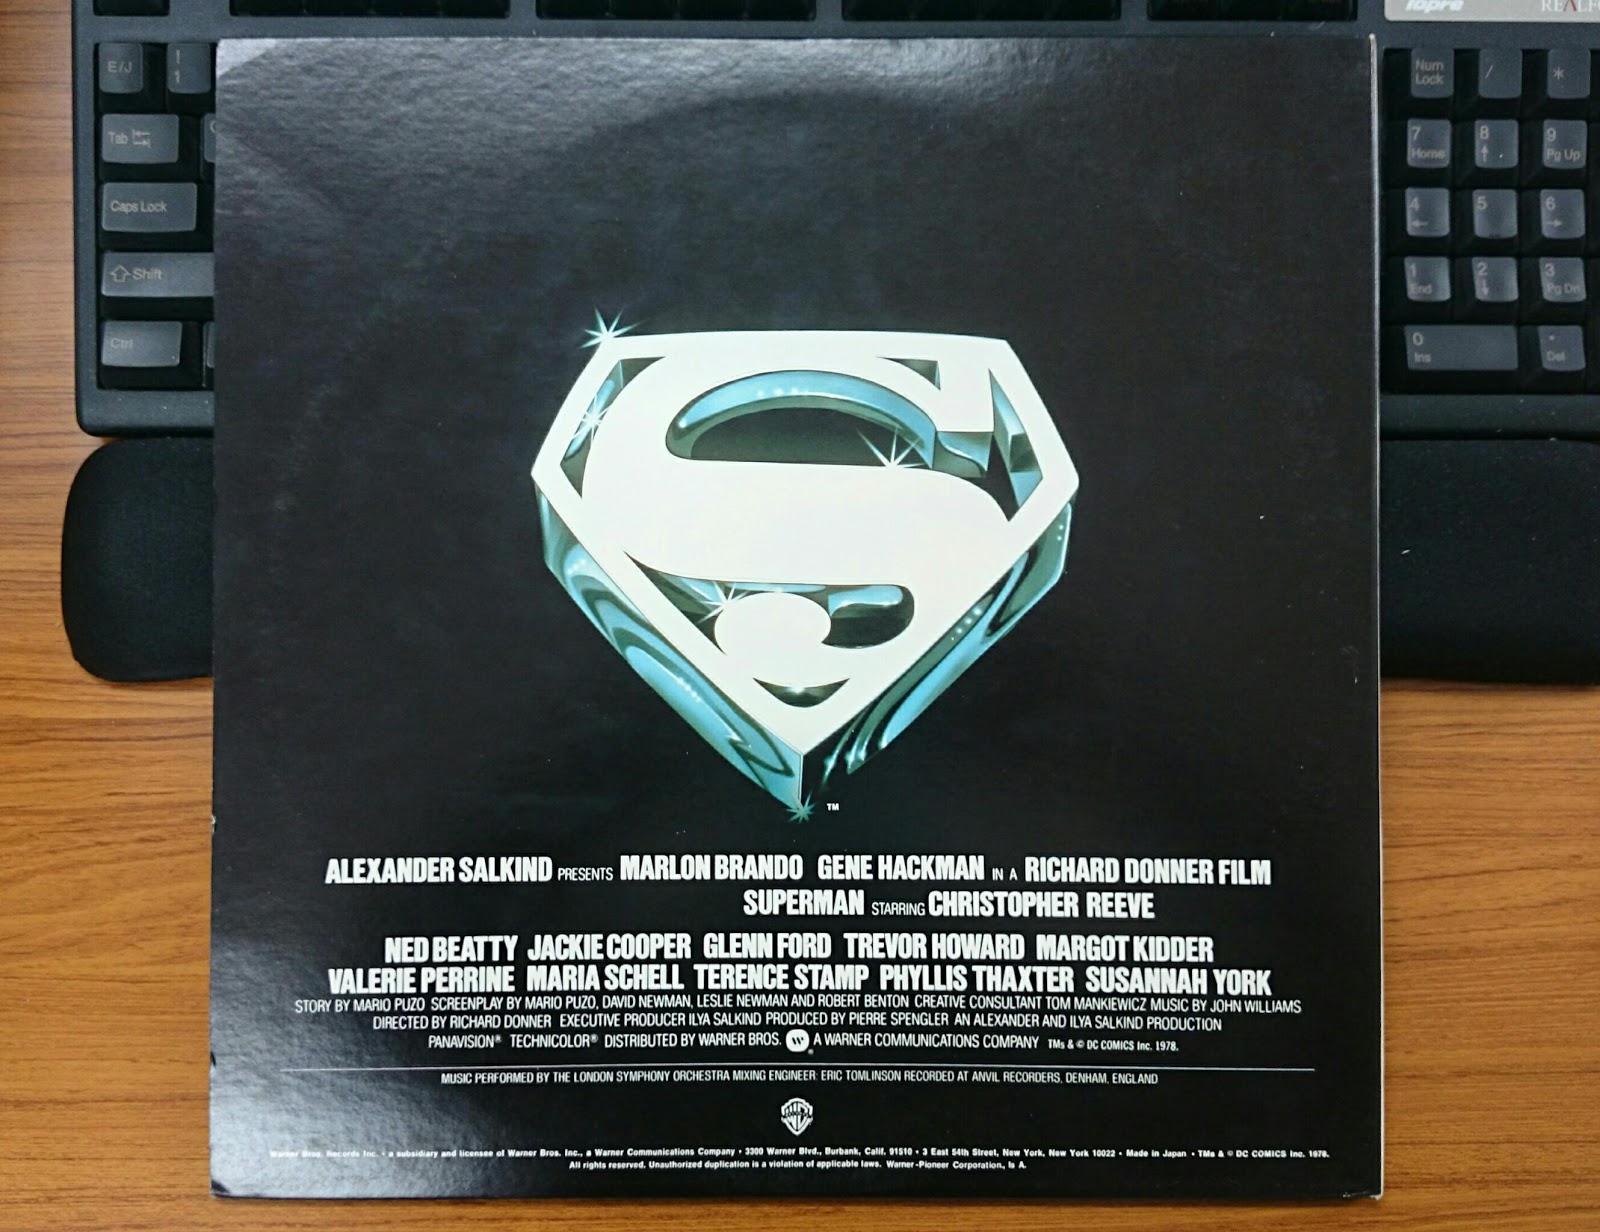 レコードで見かけたスーパーマン スーパーマン スーパー ガス 未完成 シューベルツ スノー レコード ブログ